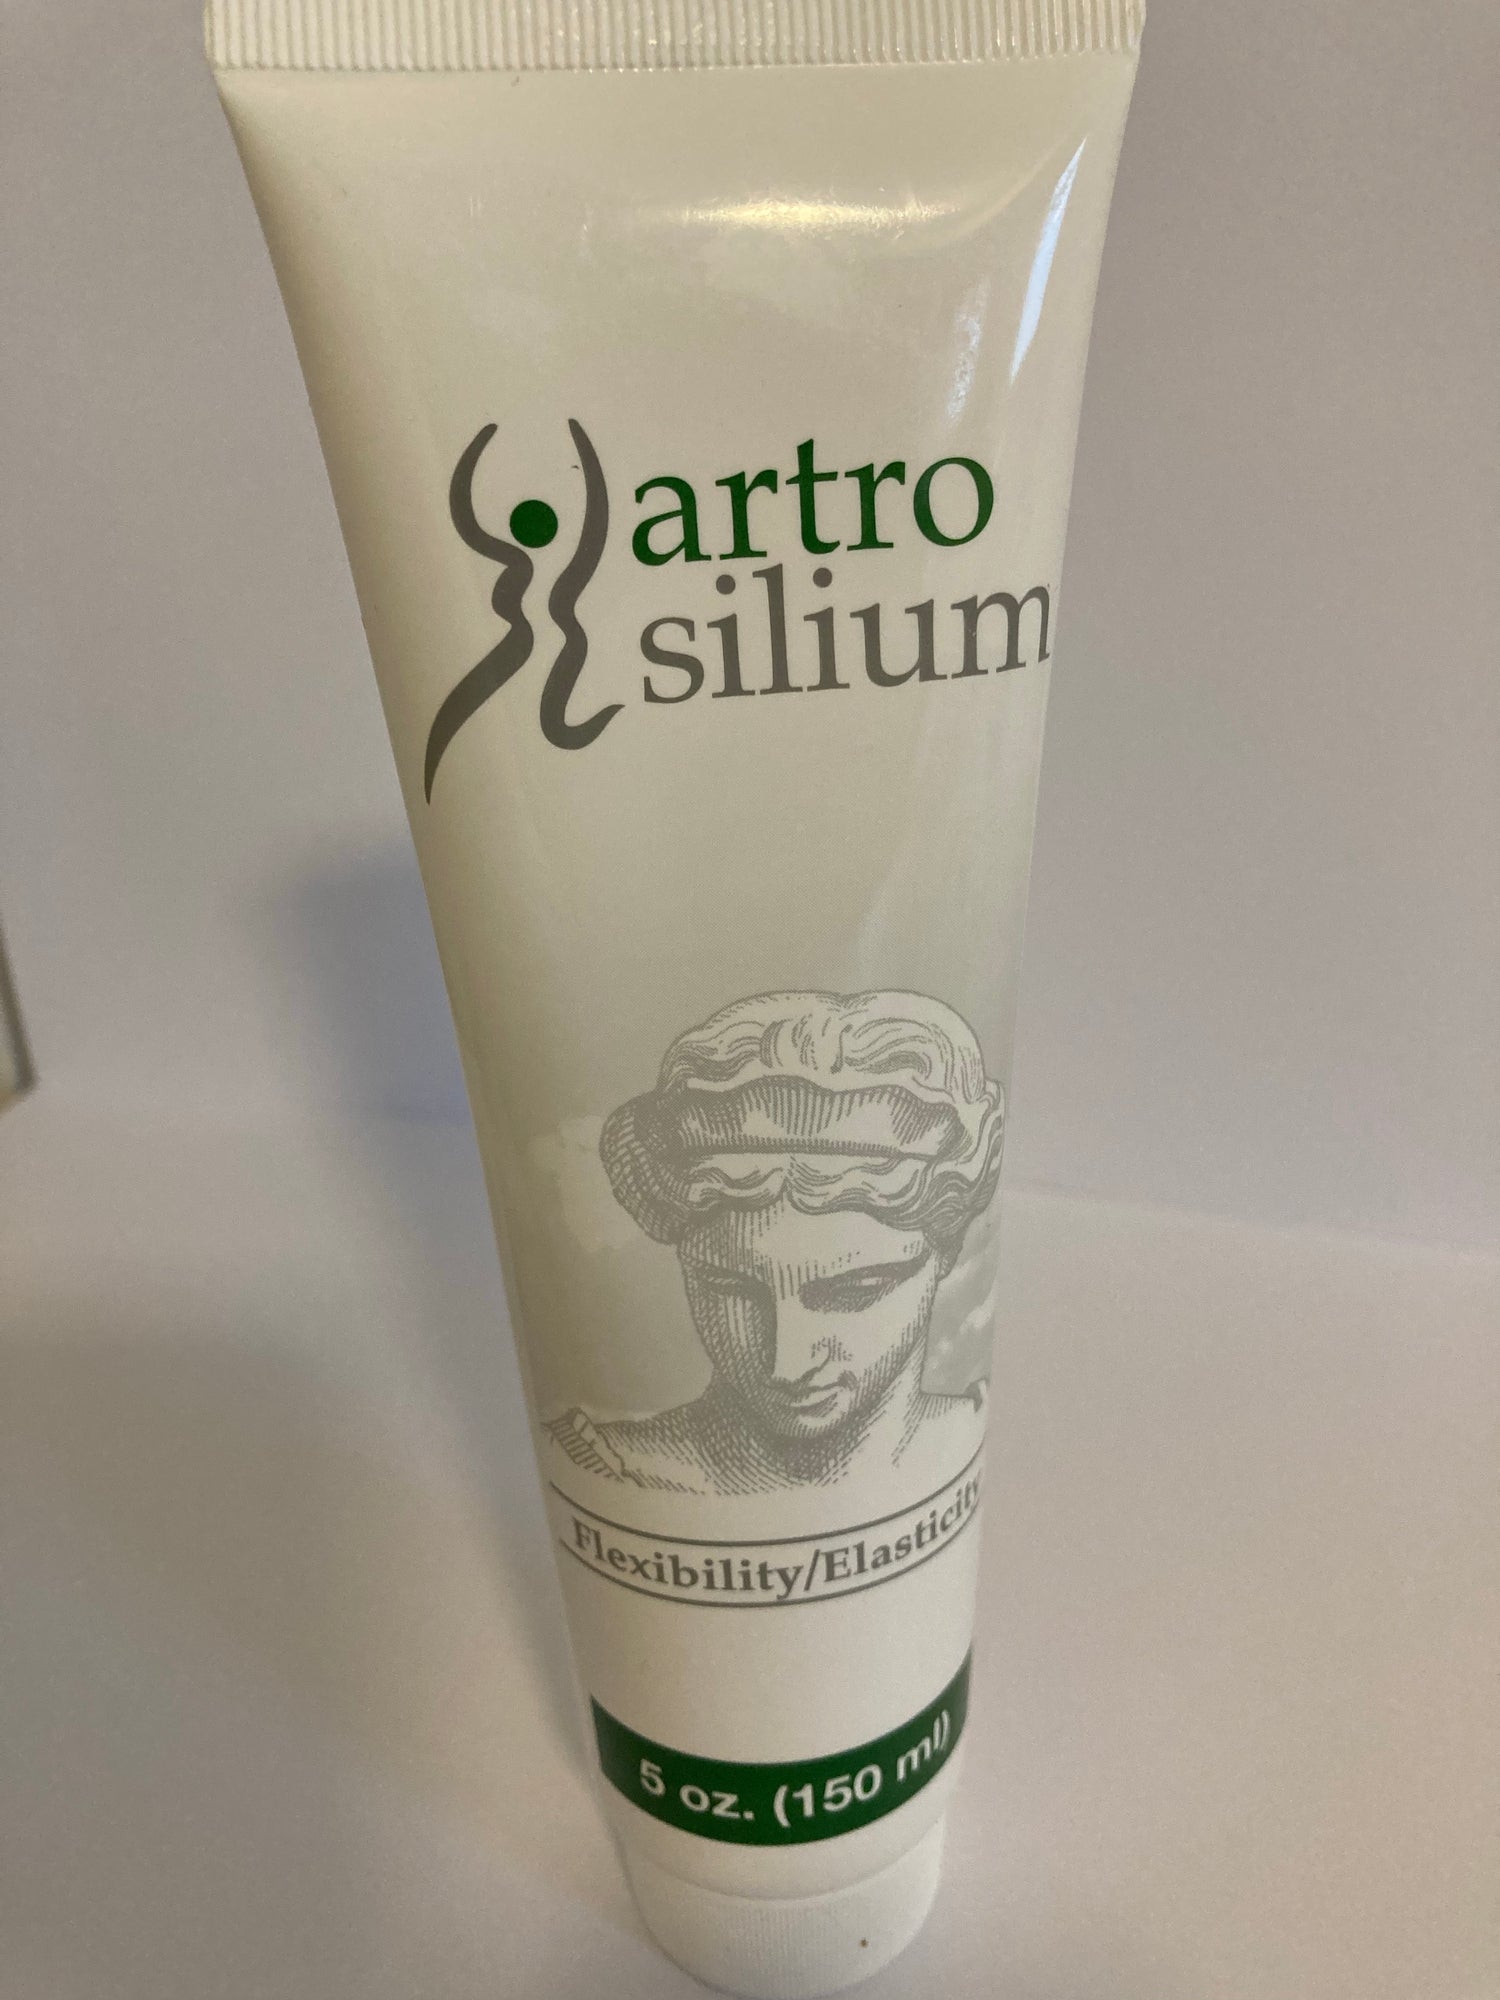 Genuine Artro silium